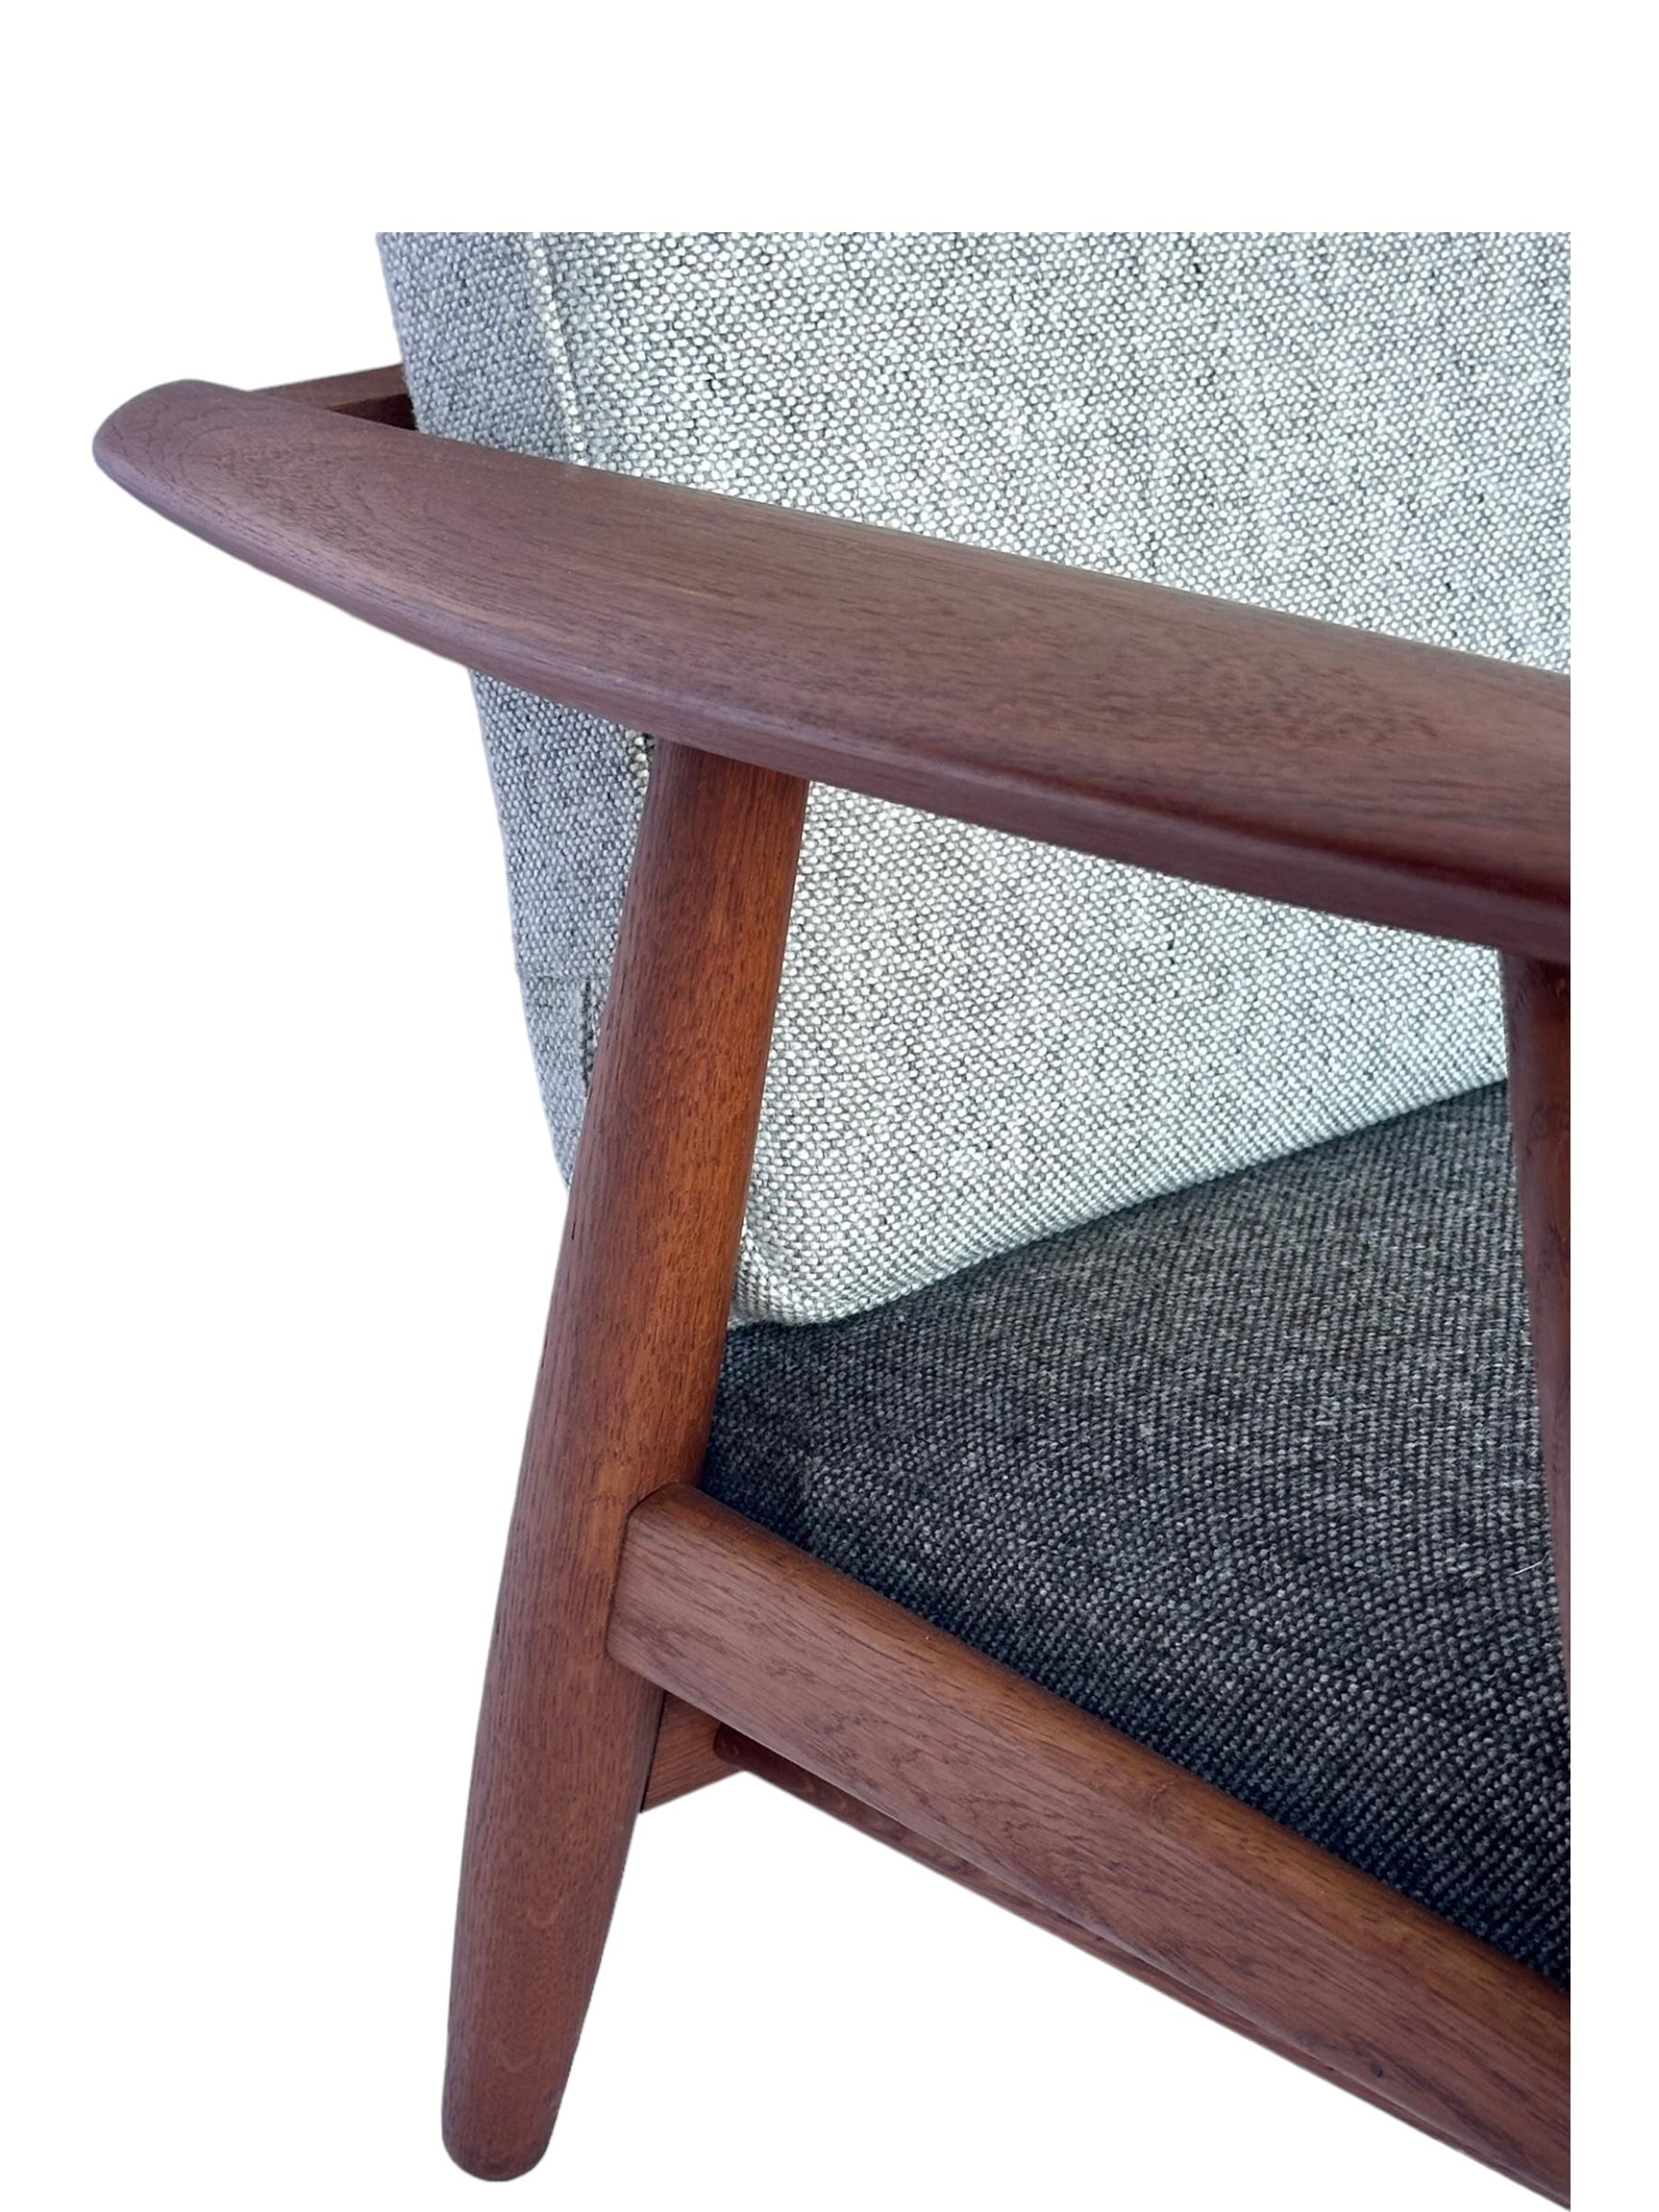 Teak Hans J. Wegner for Getama Signed Sofa with new Mataram Upholstery For Sale